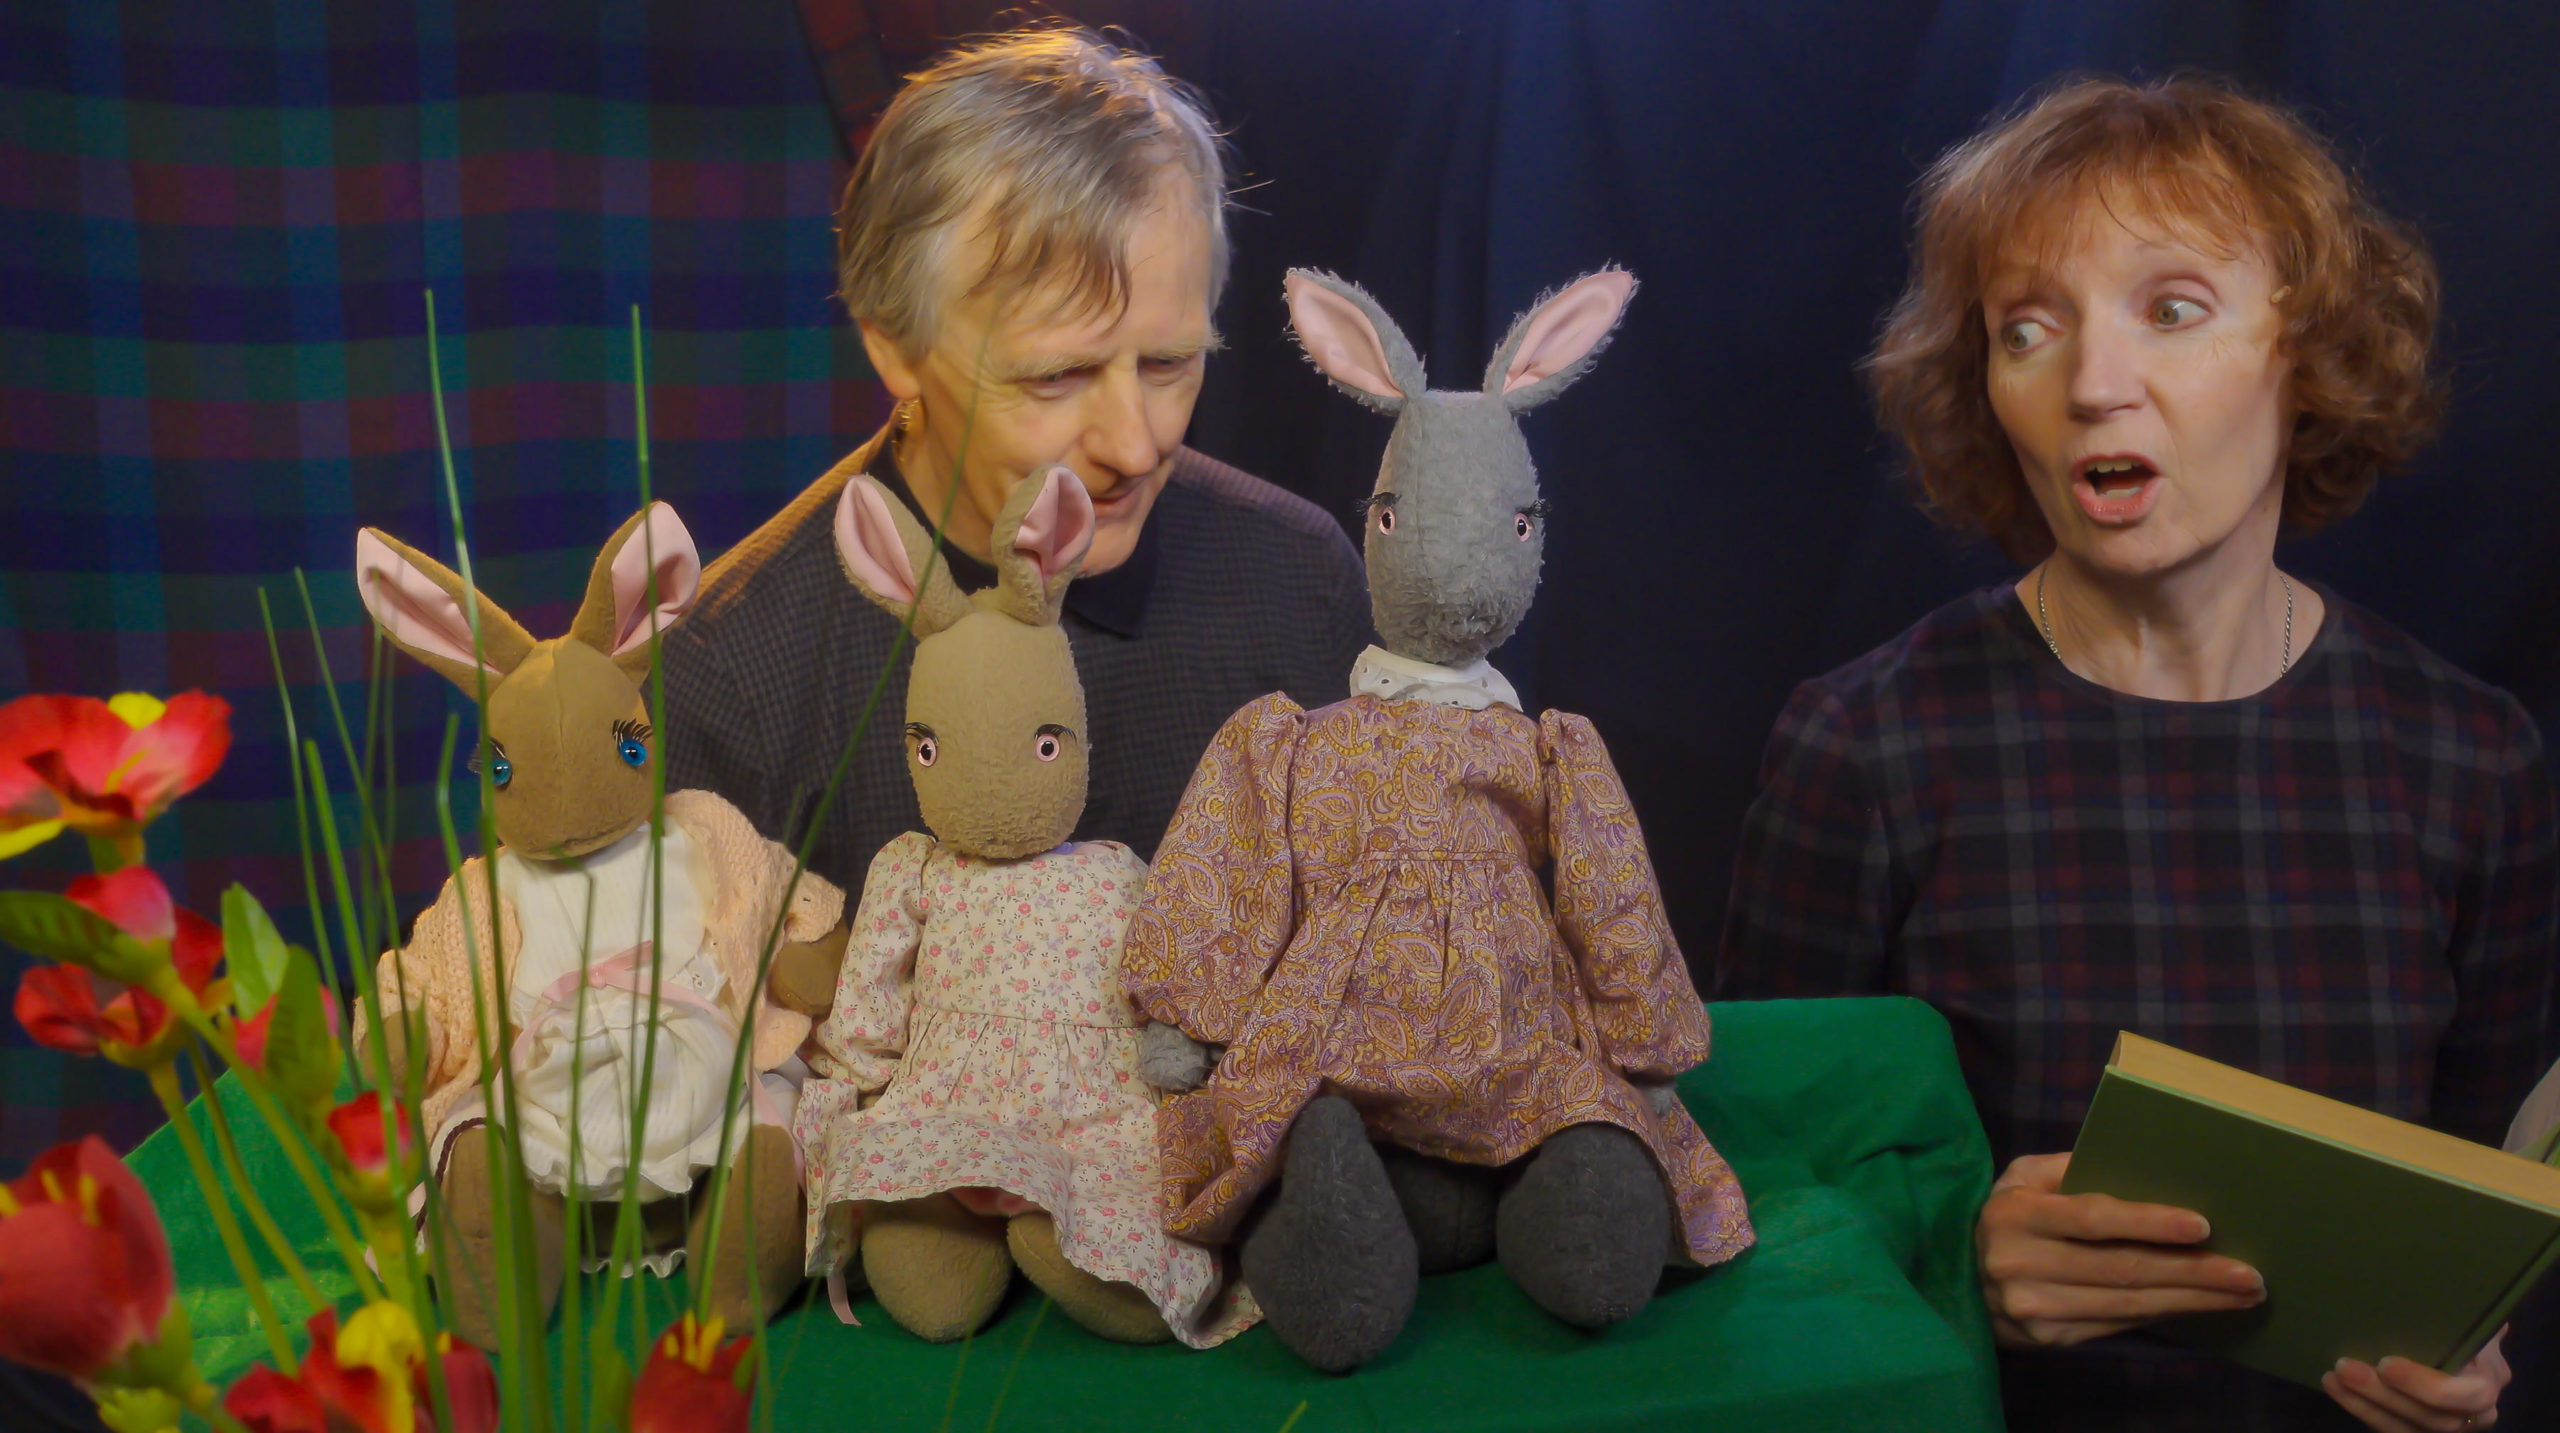 A White man and woman act, three rabbit puppets in dresses in front of them / Un homme et une femme Blanche jouent, trois marionettes de lapins en robes devant eux.